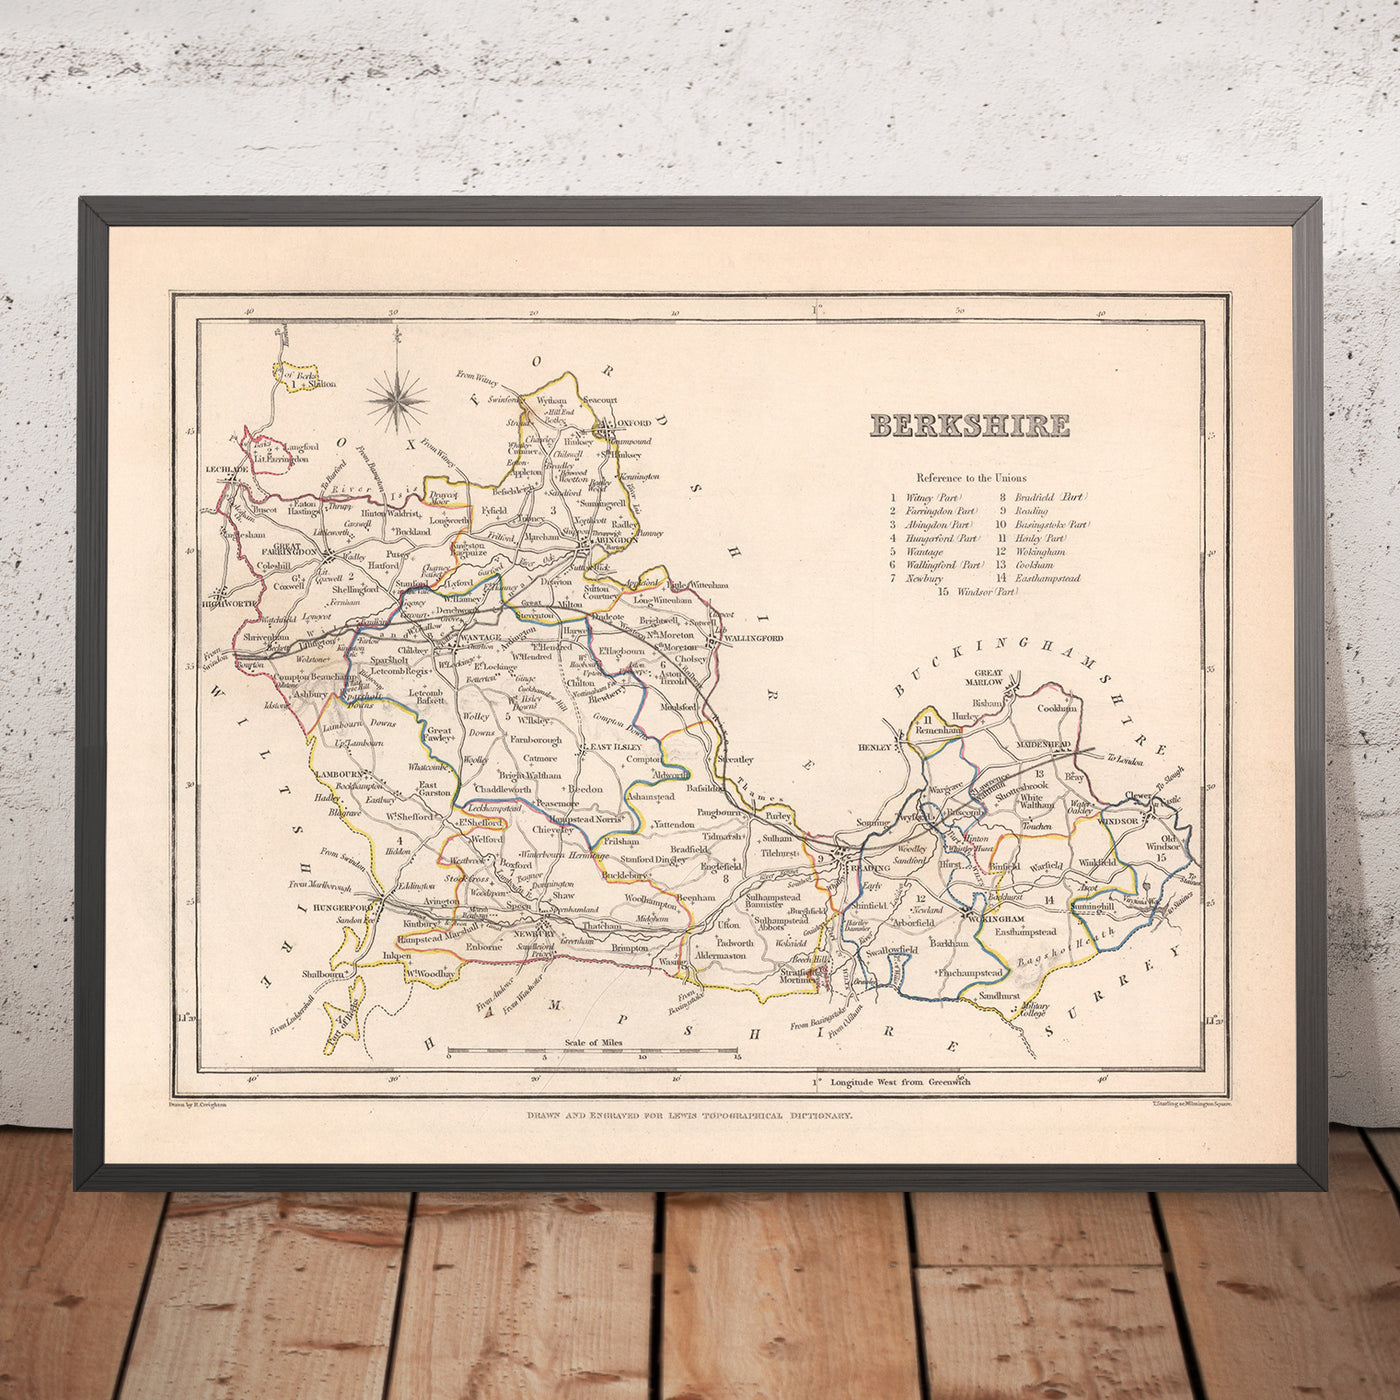 Alte Karte von Berkshire von Samuel Lewis, 1844: Reading, Windsor, Newbury, Abingdon und Henley-on-Thames